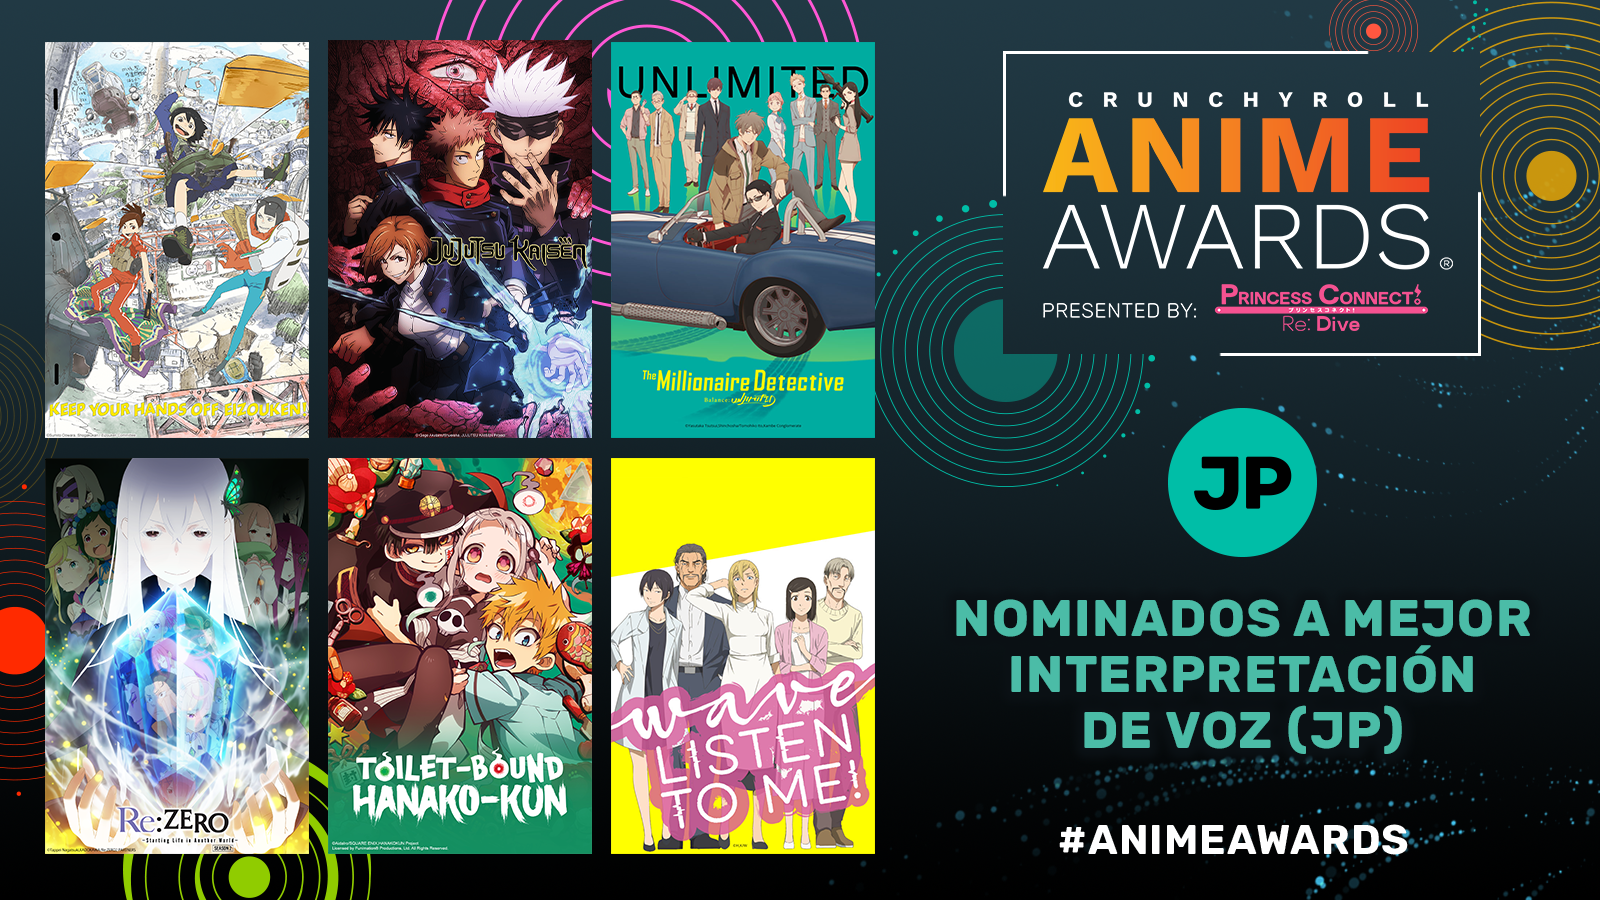 Crunchyroll Anime Awards 2021 ¡Vota por tu favorito! 8